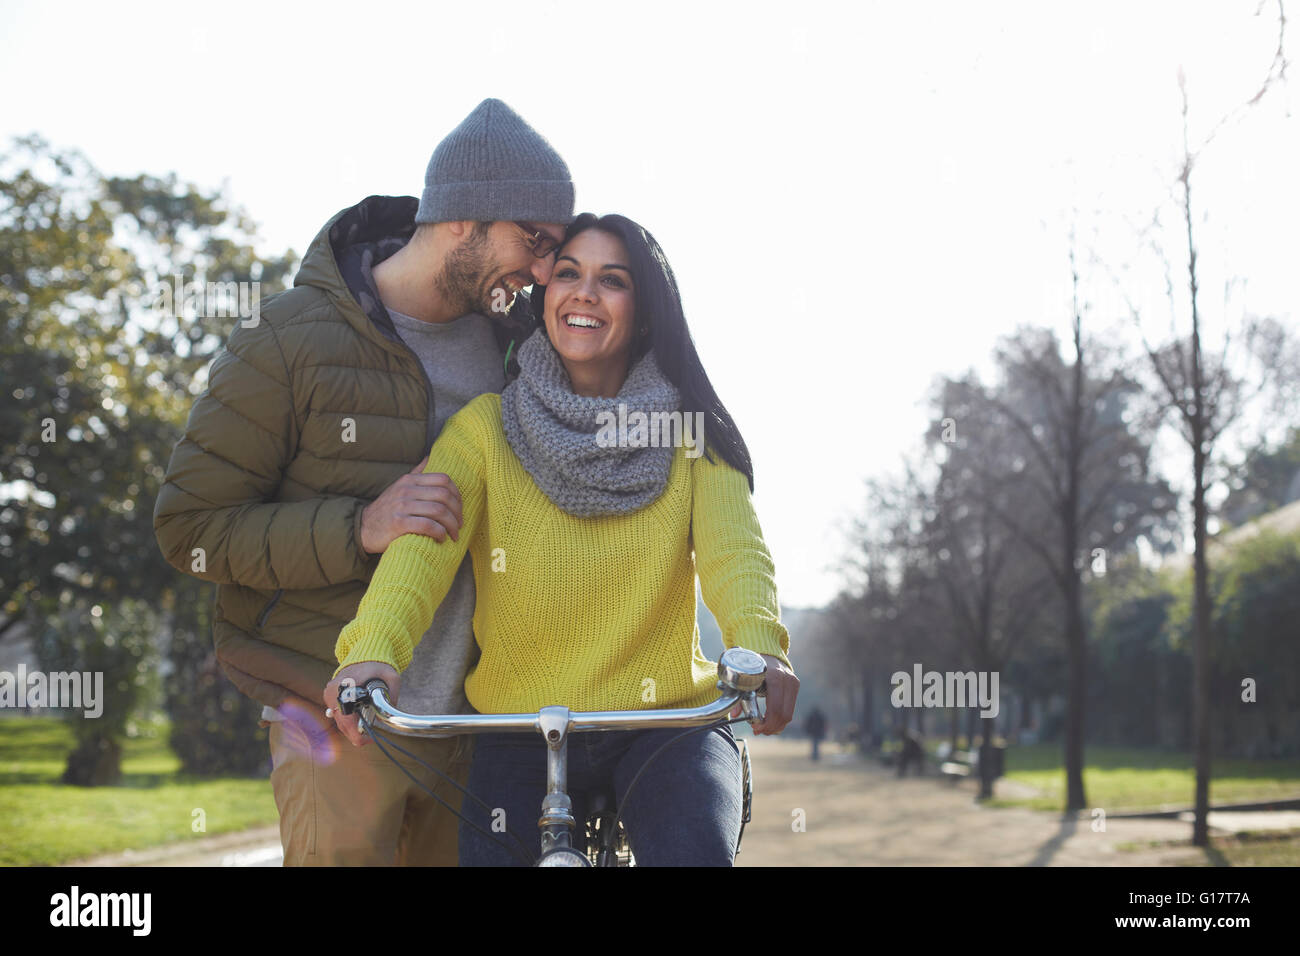 Mitte erwachsener Mann umarmt lächelnd Mitte Erwachsene Frau auf Fahrrad im park Stockfoto